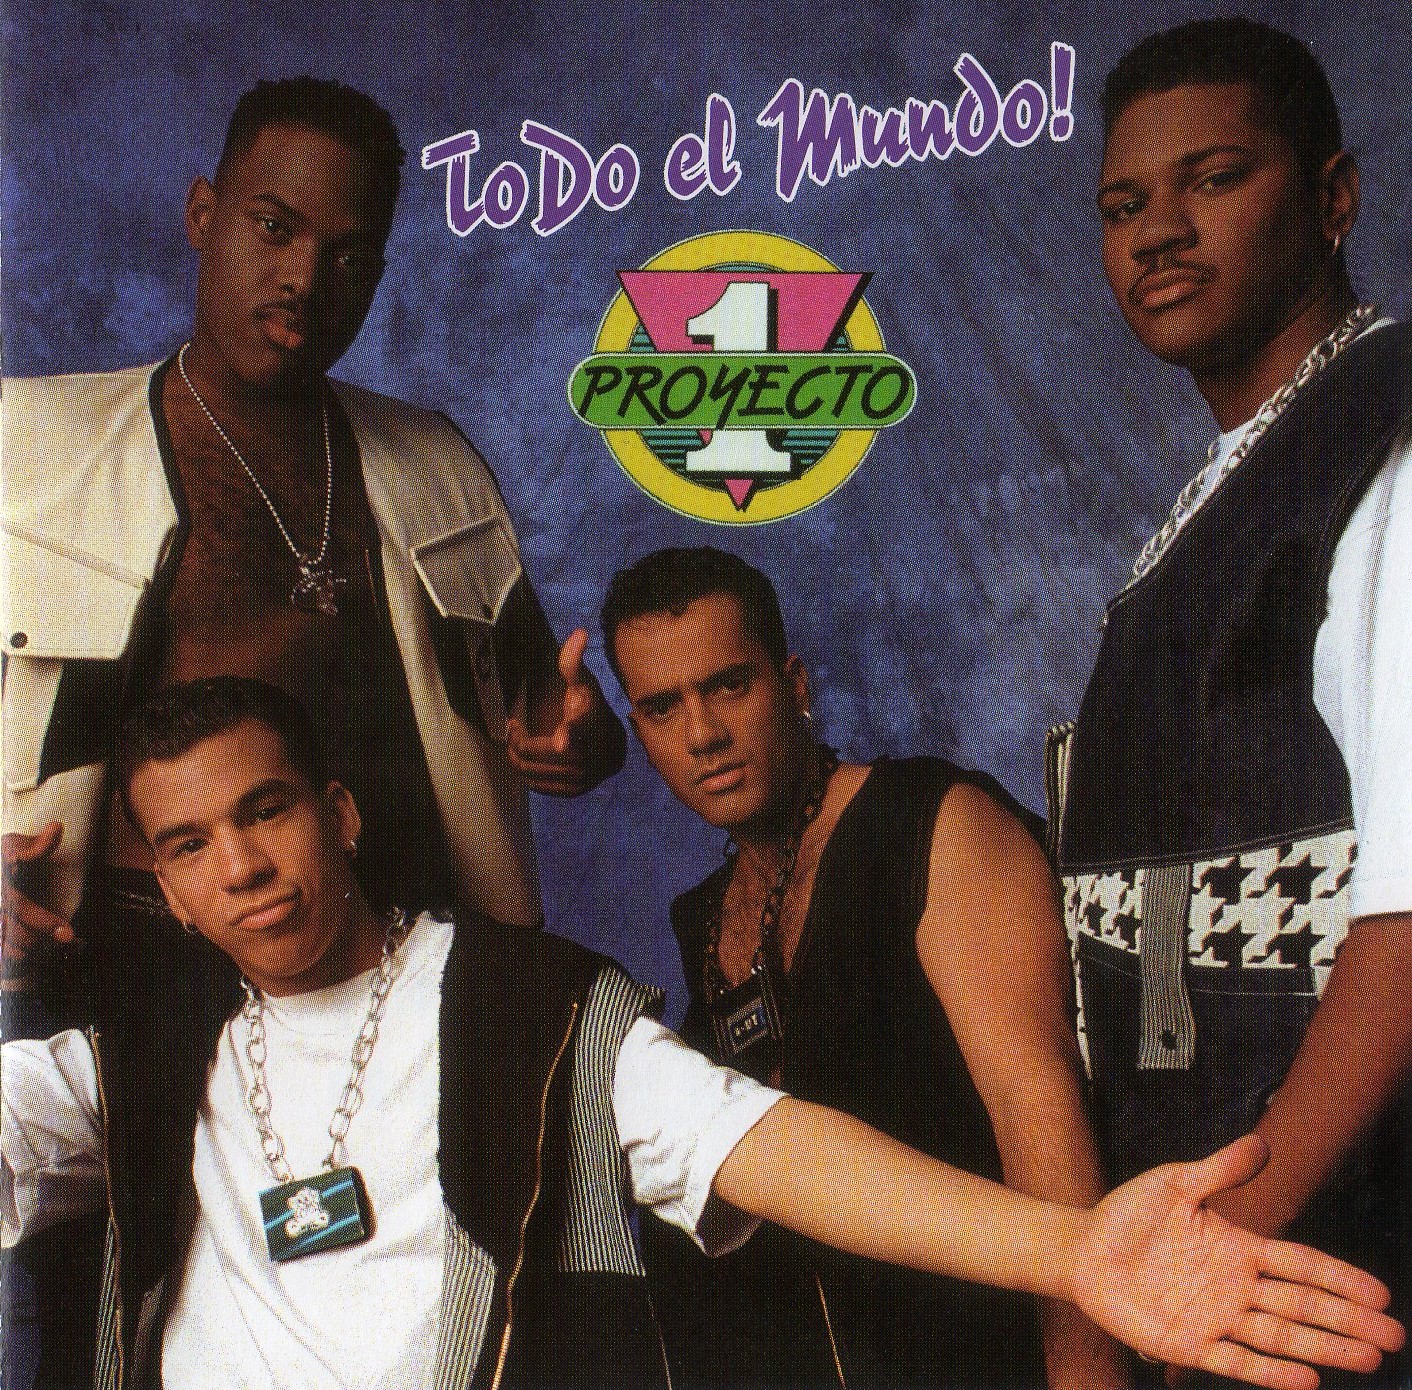 Proyecto Uno Todo el Mundo CD album cover, 1991